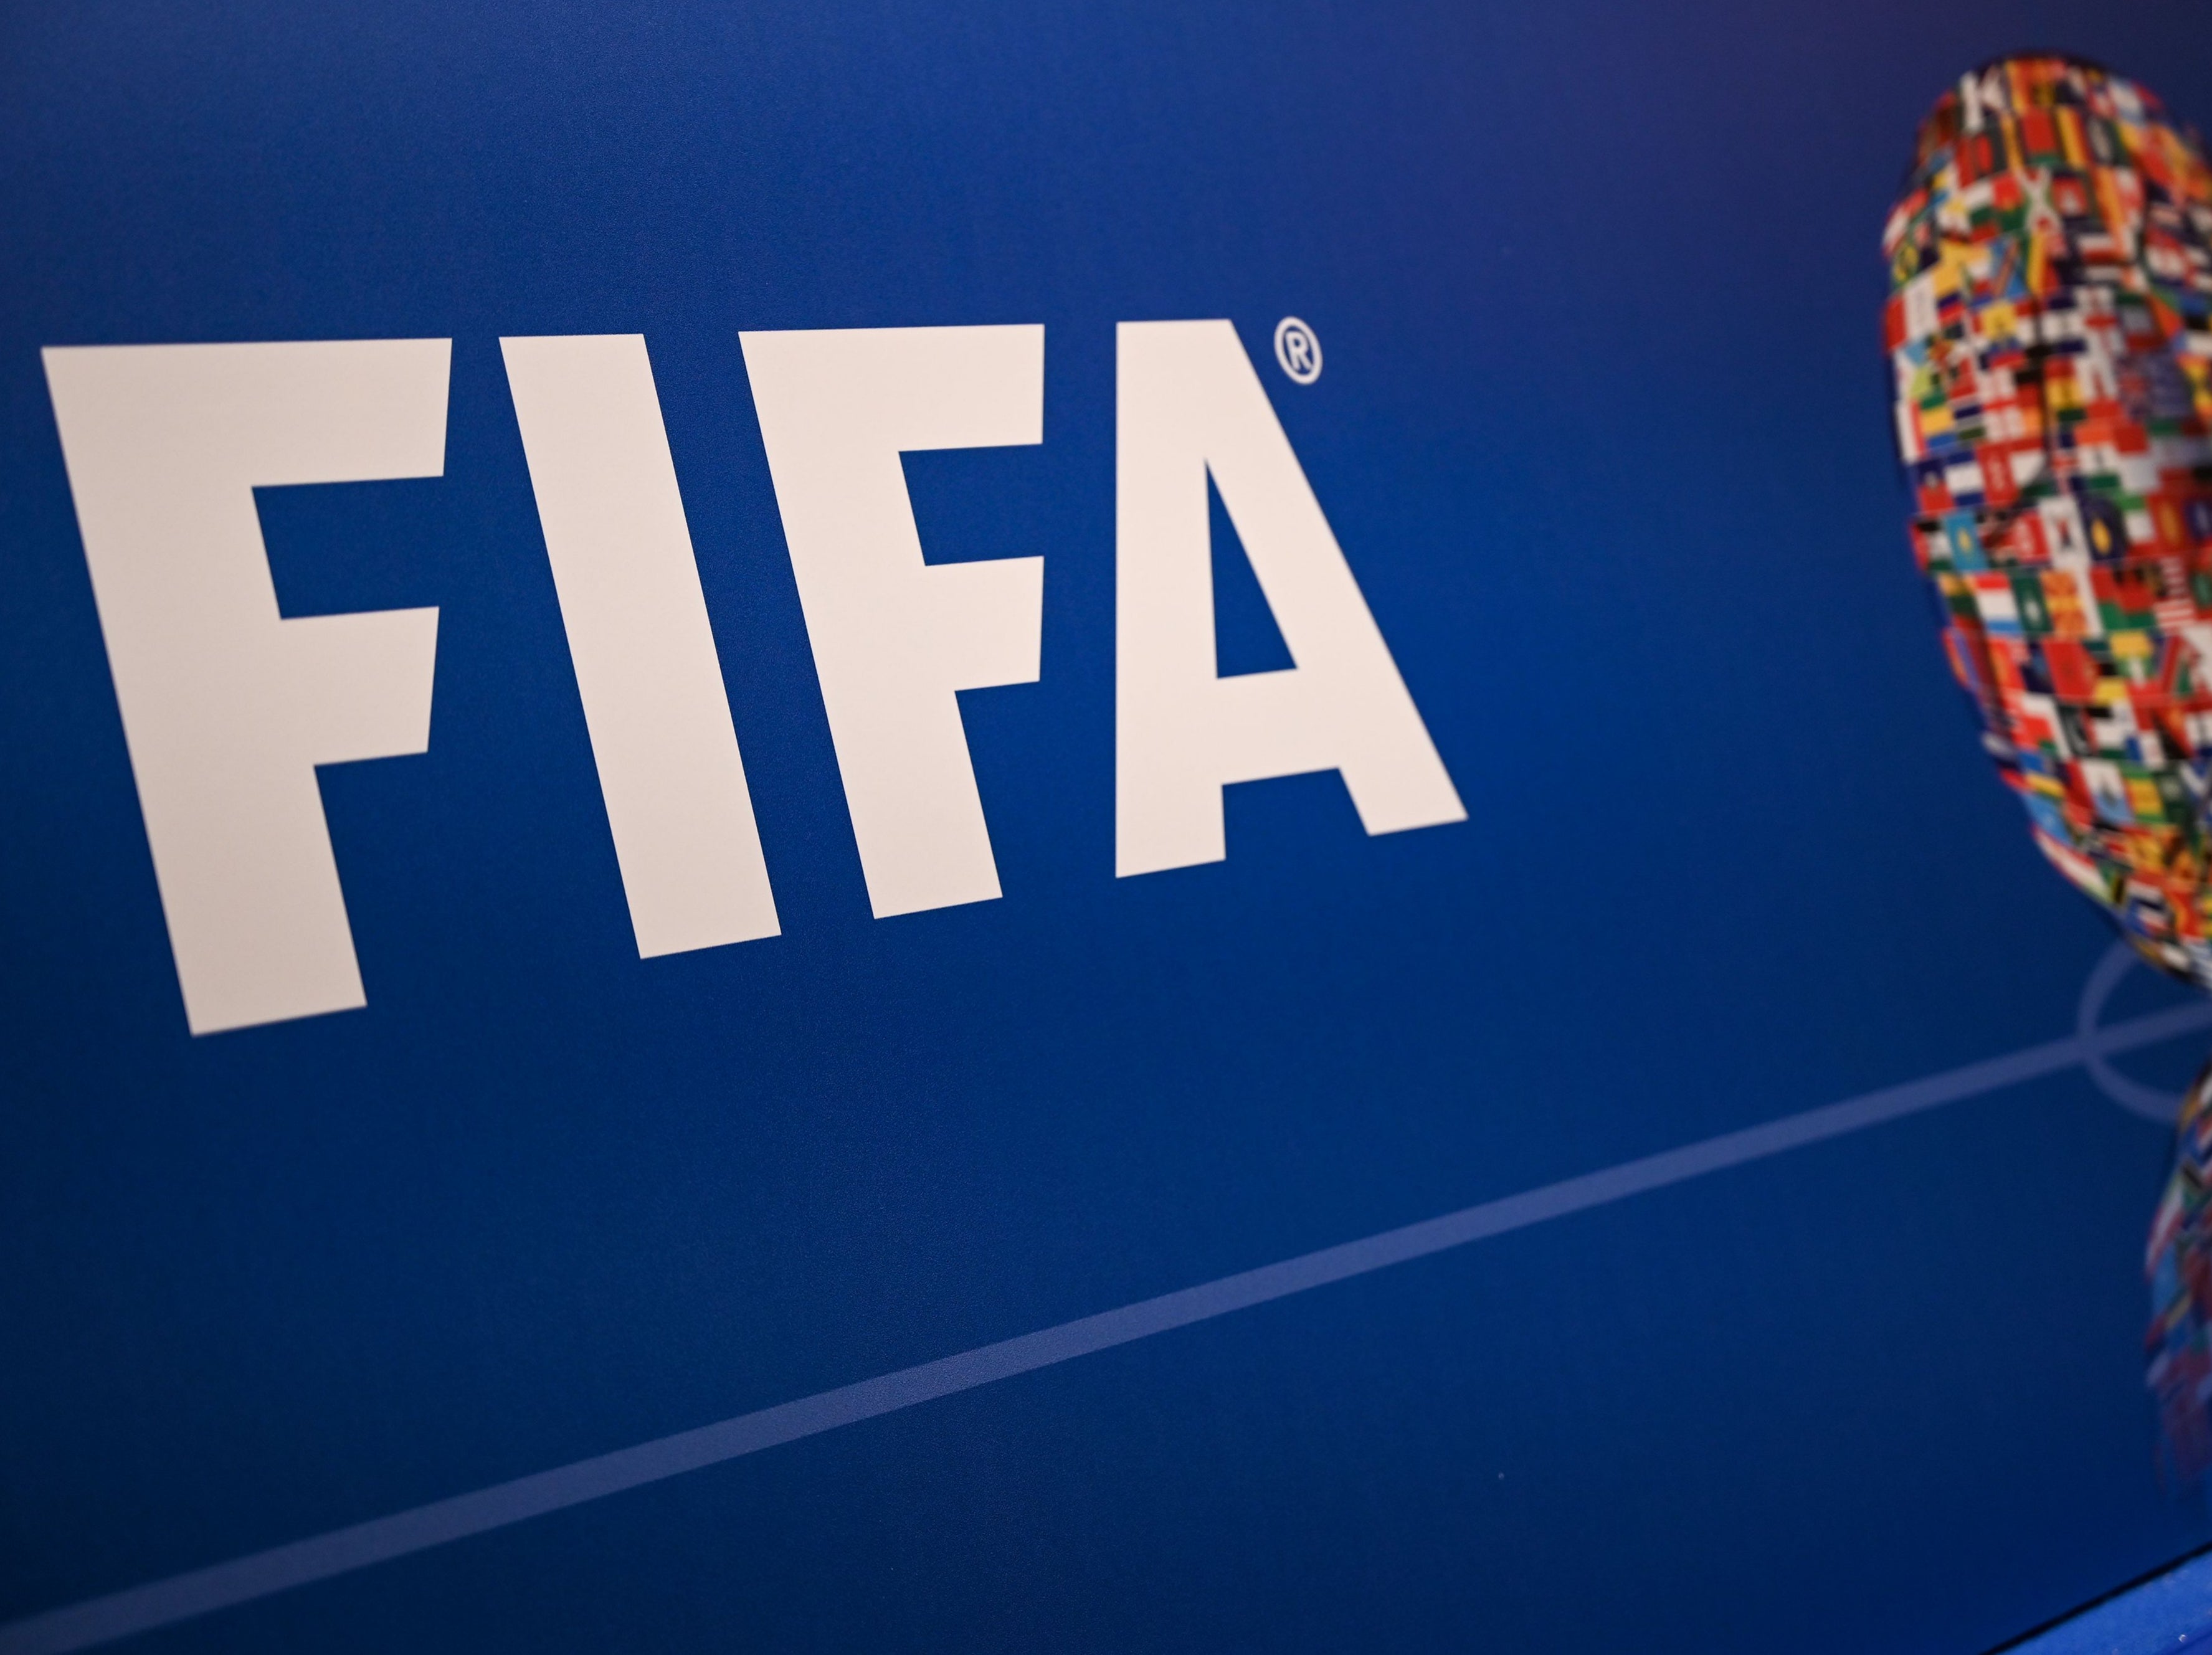 World football’s governing body Fifa has opened the disciplinary cases